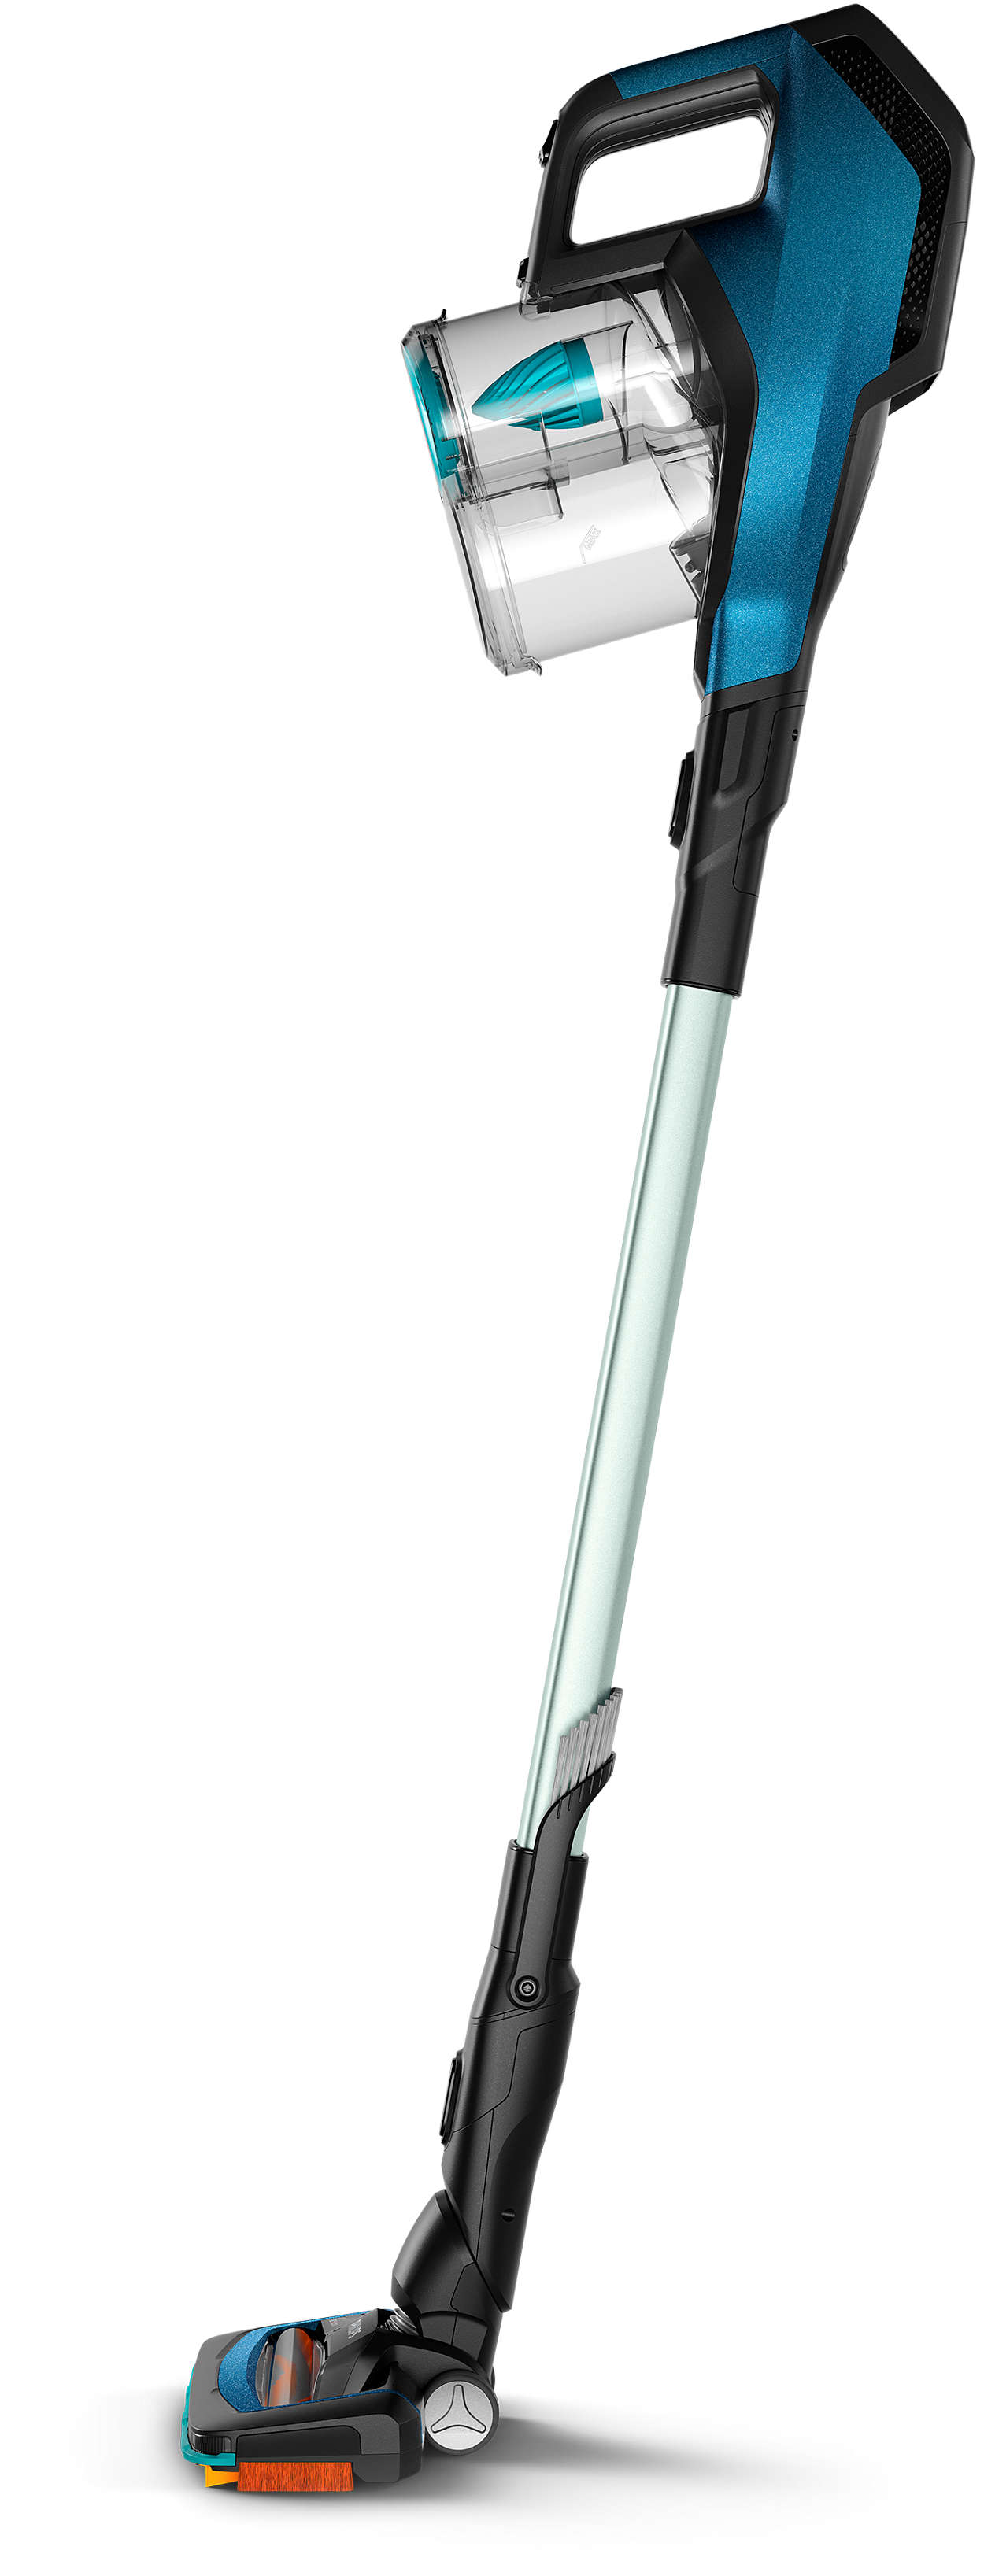 SpeedPro Aqua Cordless Stick vacuum cleaner FC6728/01 | Philips